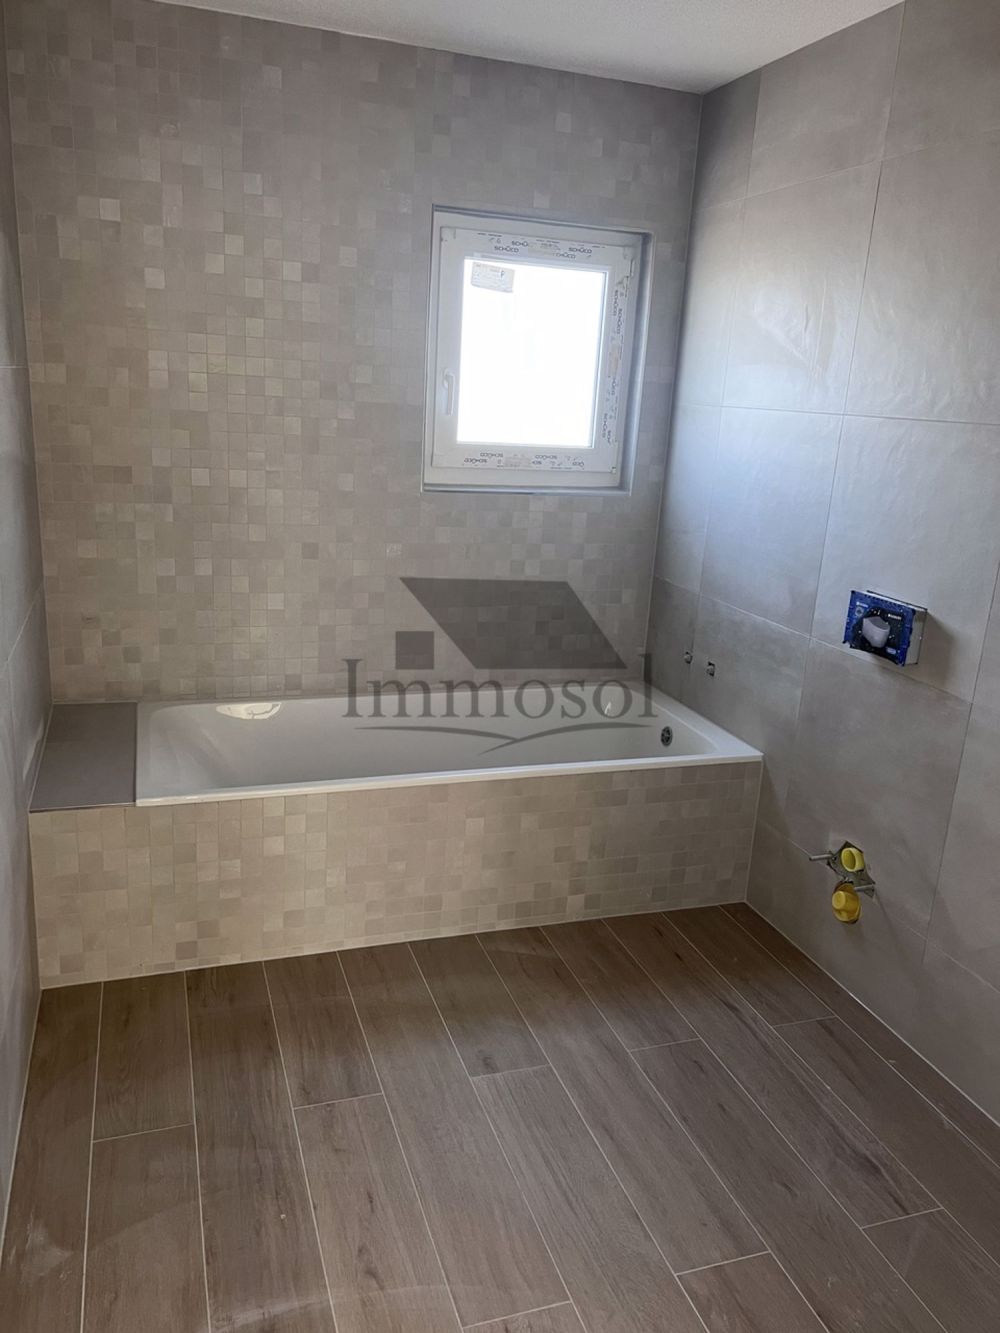 Salle de bain étage avec baignoire